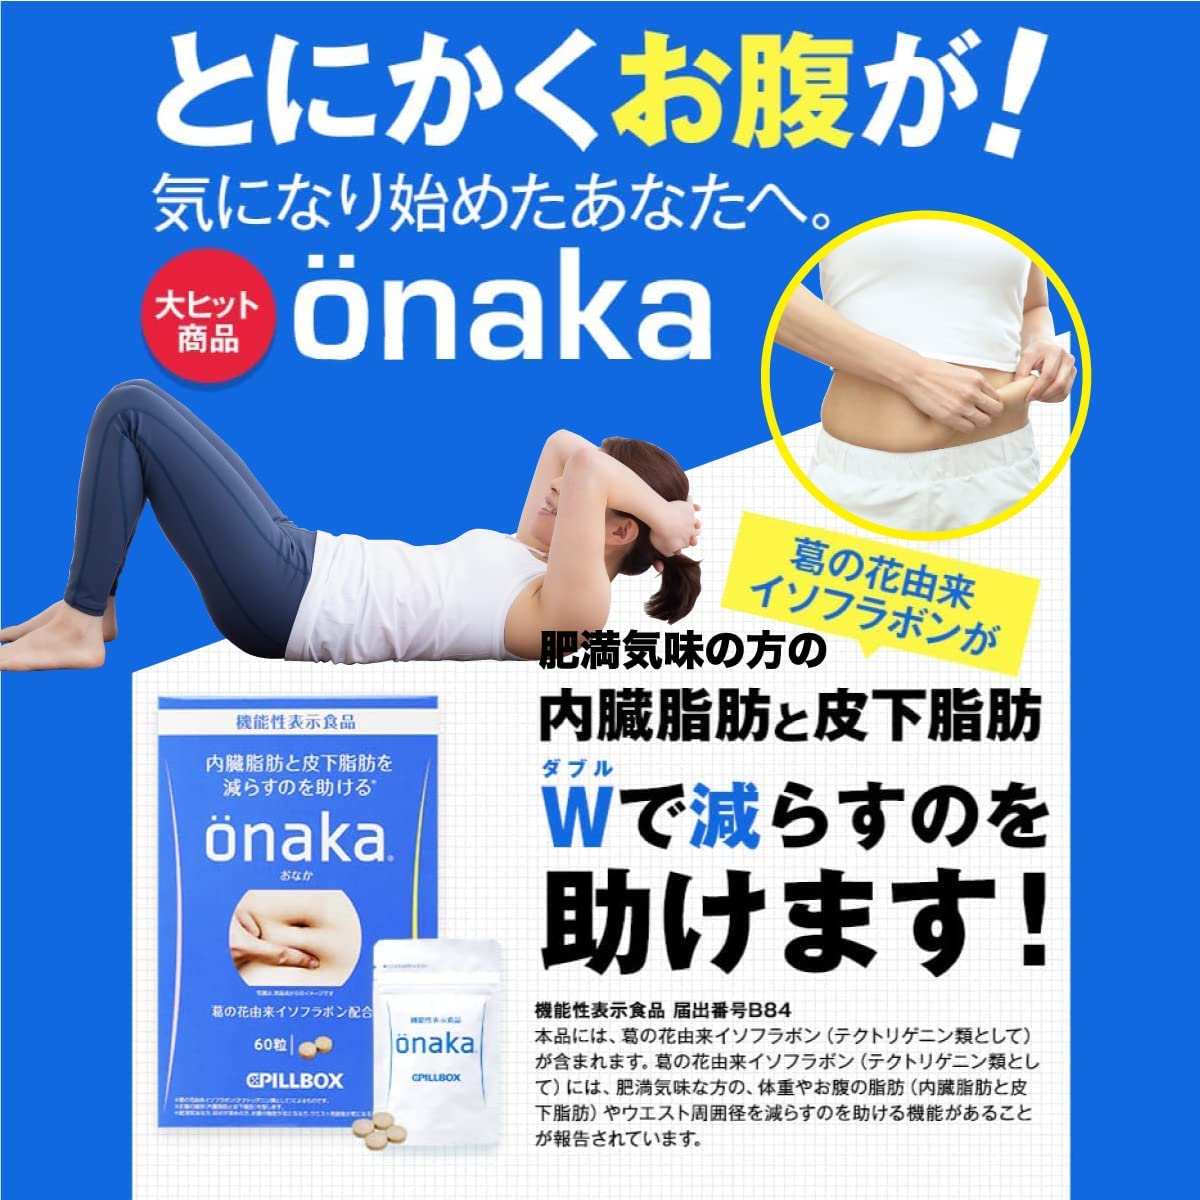 ピルボックス onaka(おなか) [機能性表示食品] (onaka 30日分) 脂肪燃焼 サプリ 強力 ダイエット 女性 葛の花由来イソフラボンが内臓脂肪と皮下脂肪を減らすのを助ける 機能性表示食品サプリメント